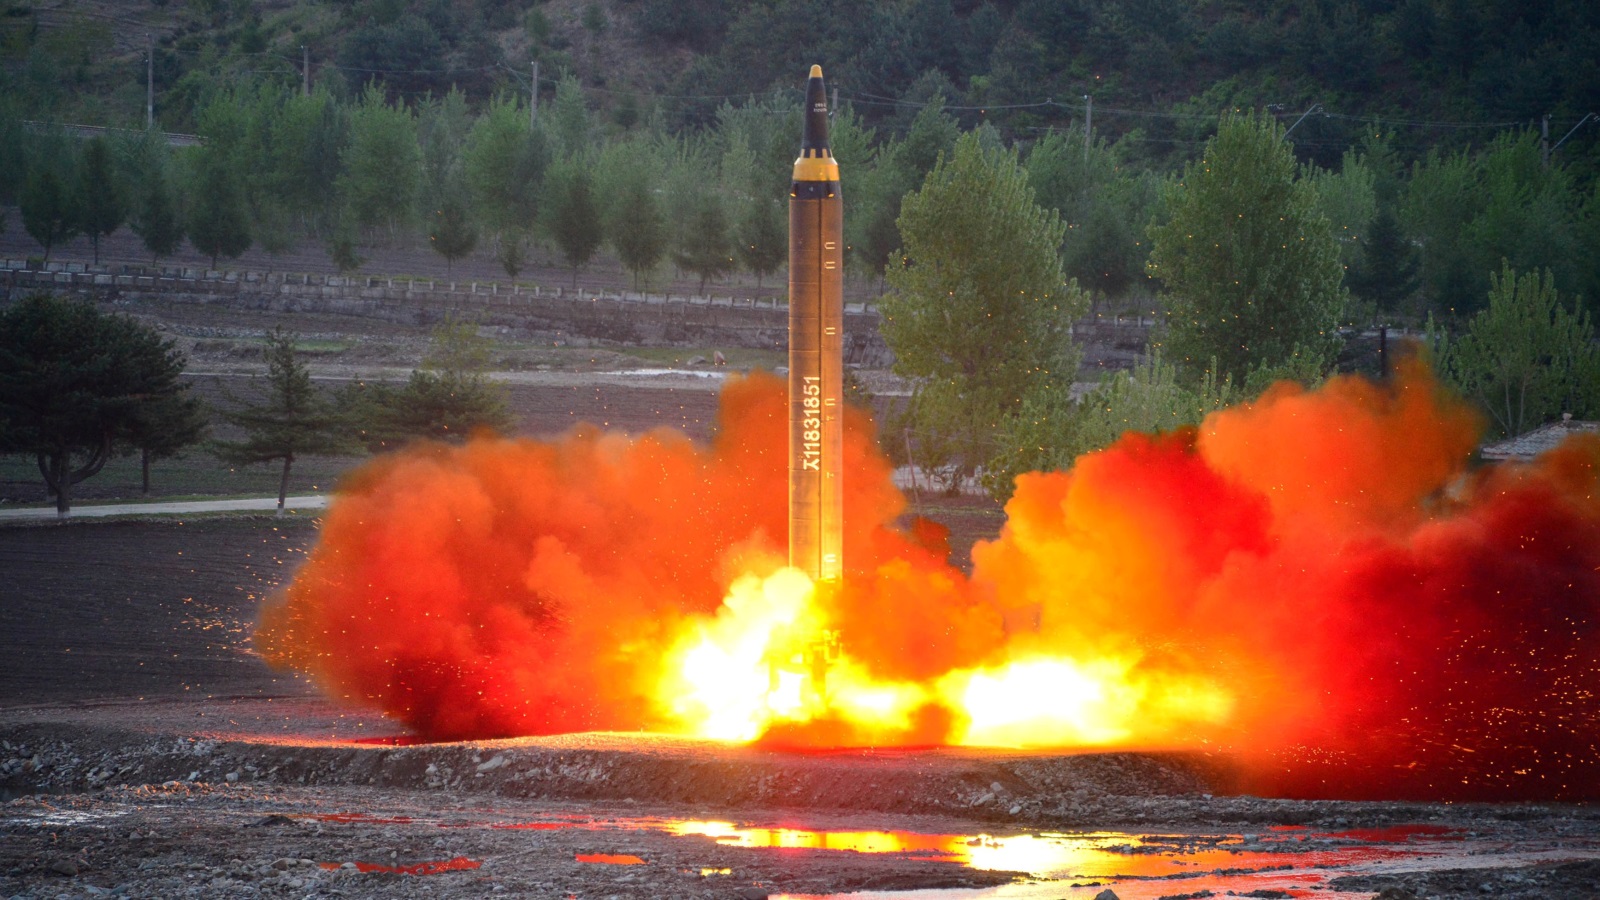 ‪كوريا الشمالية أطلقت صواريخ بالستية عابرة للقارات في أكثر من مناسبة‬ كوريا الشمالية أطلقت صواريخ بالستية عابرة للقارات في أكثر من مناسبة (رويترز)